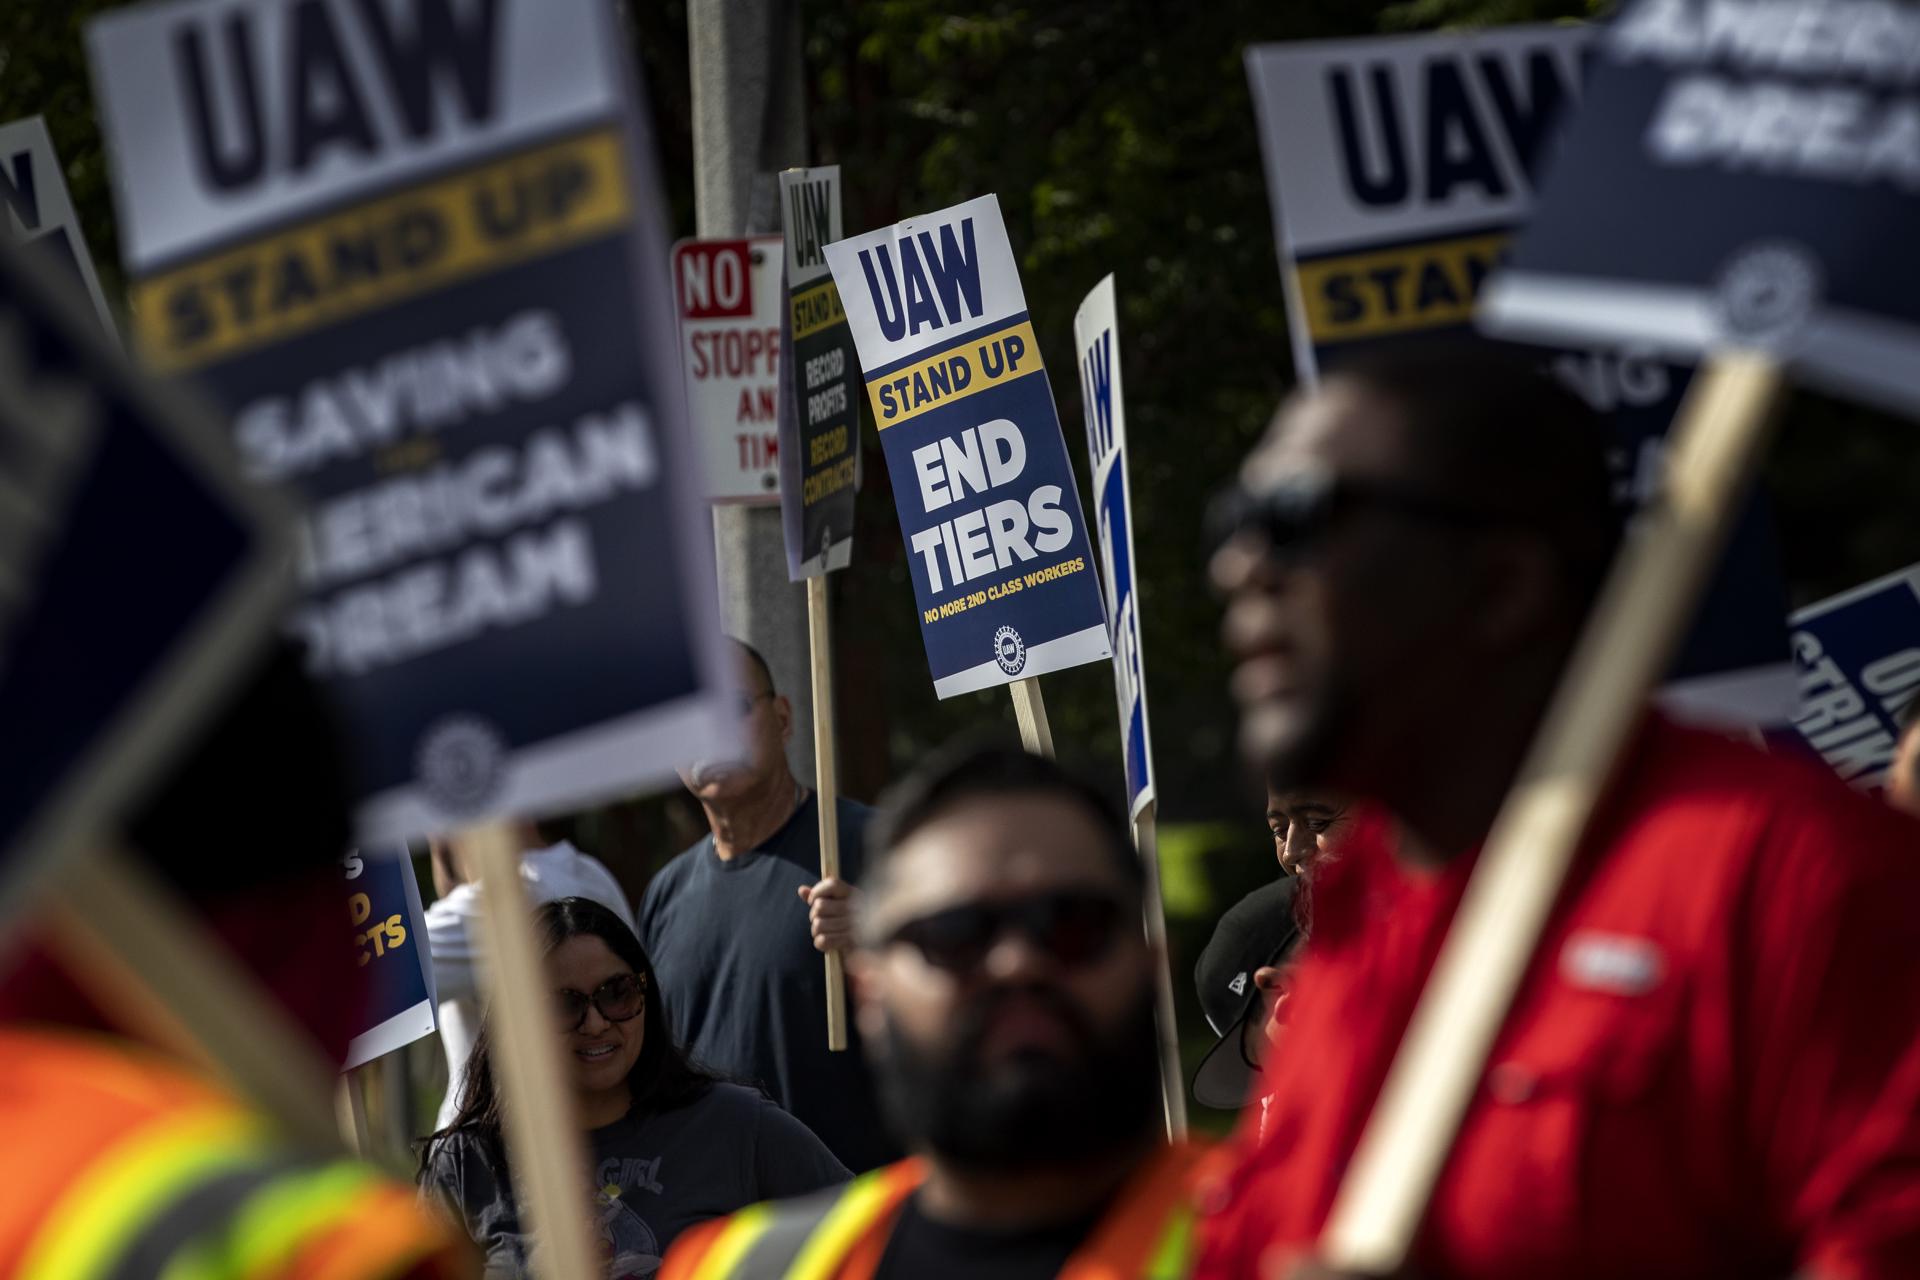 El total de miembros de la UAW es de 146.000. De ese total de trabajadores sindicalizados, se mantienen en huelga más de 45.000.